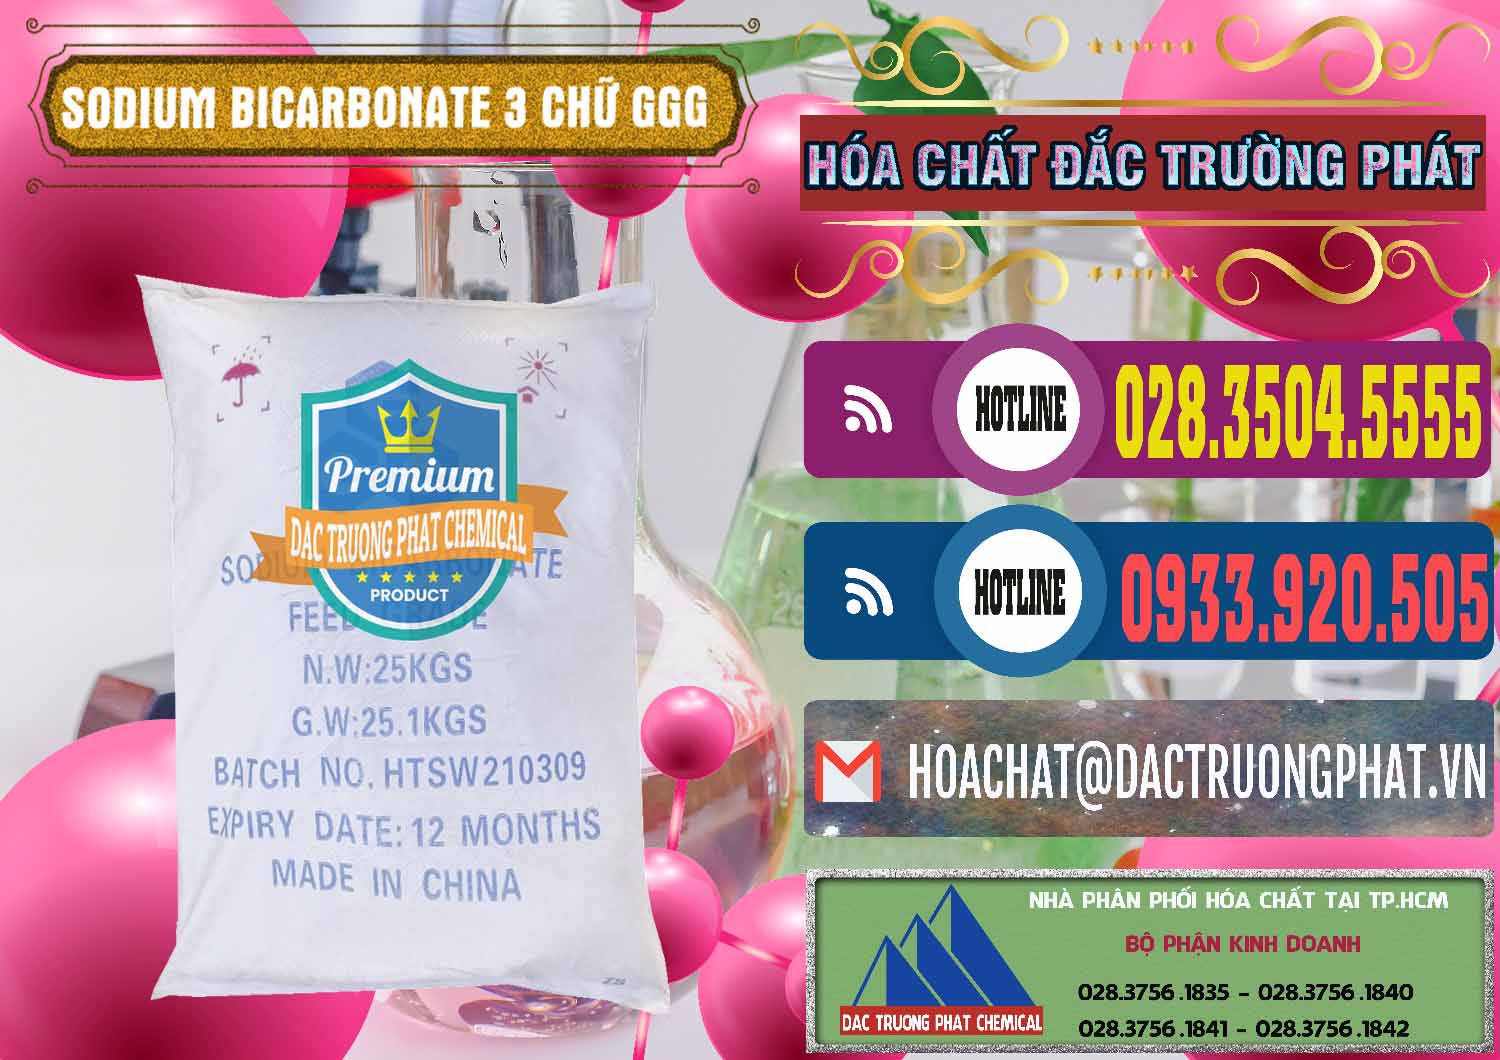 Chuyên cung ứng và bán Sodium Bicarbonate – Bicar NaHCO3 Food Grade 3 Chữ GGG Trung Quốc China - 0259 - Nhà cung cấp ( kinh doanh ) hóa chất tại TP.HCM - muabanhoachat.com.vn